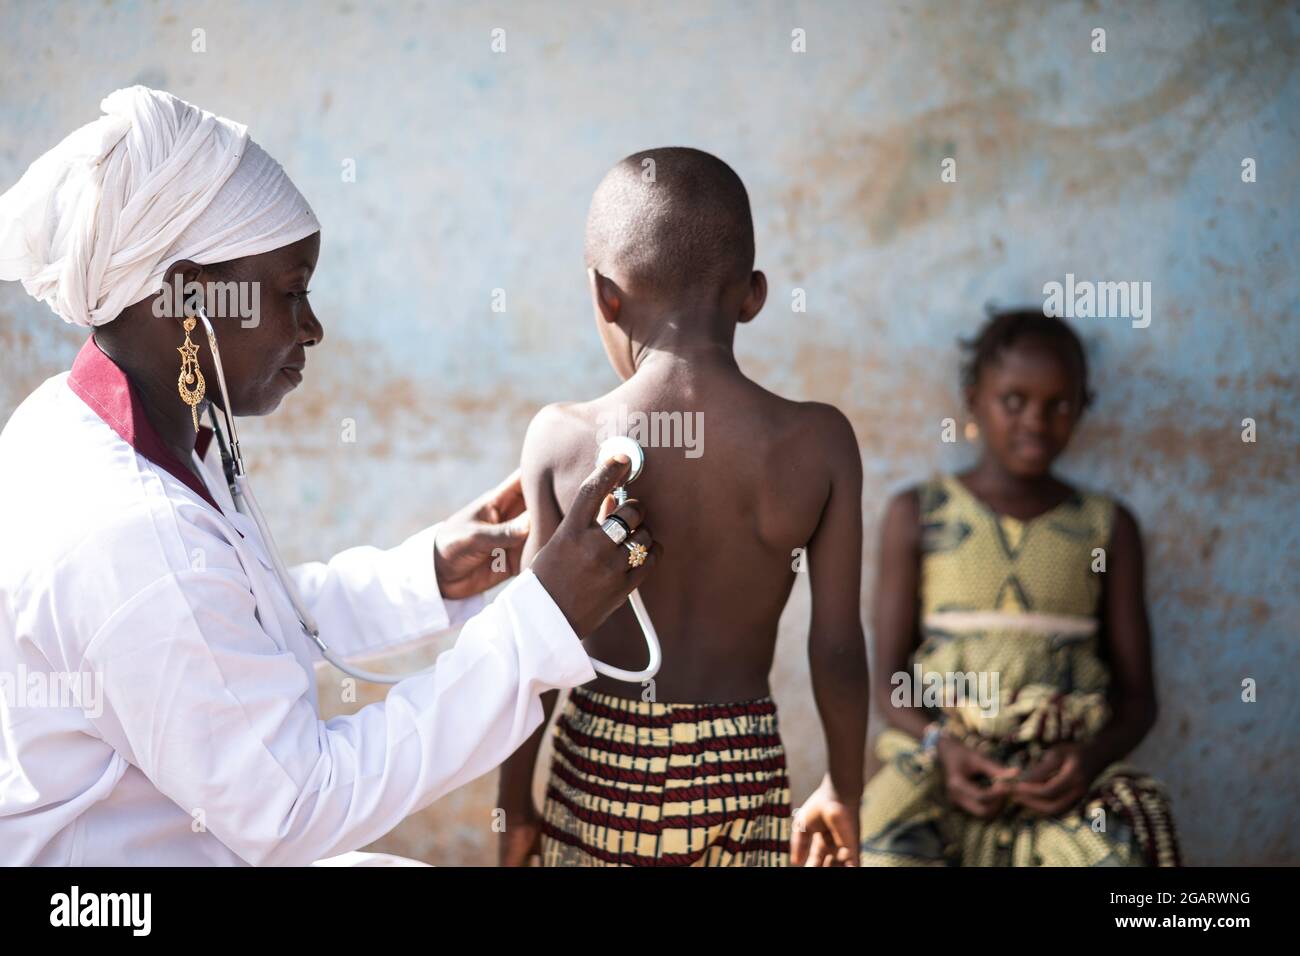 In questa immagine, un sorridente medico nero seduto in una classe sta auscultando uno dei due bambini africani con uno stetoscopio durante la scuola COVID Foto Stock